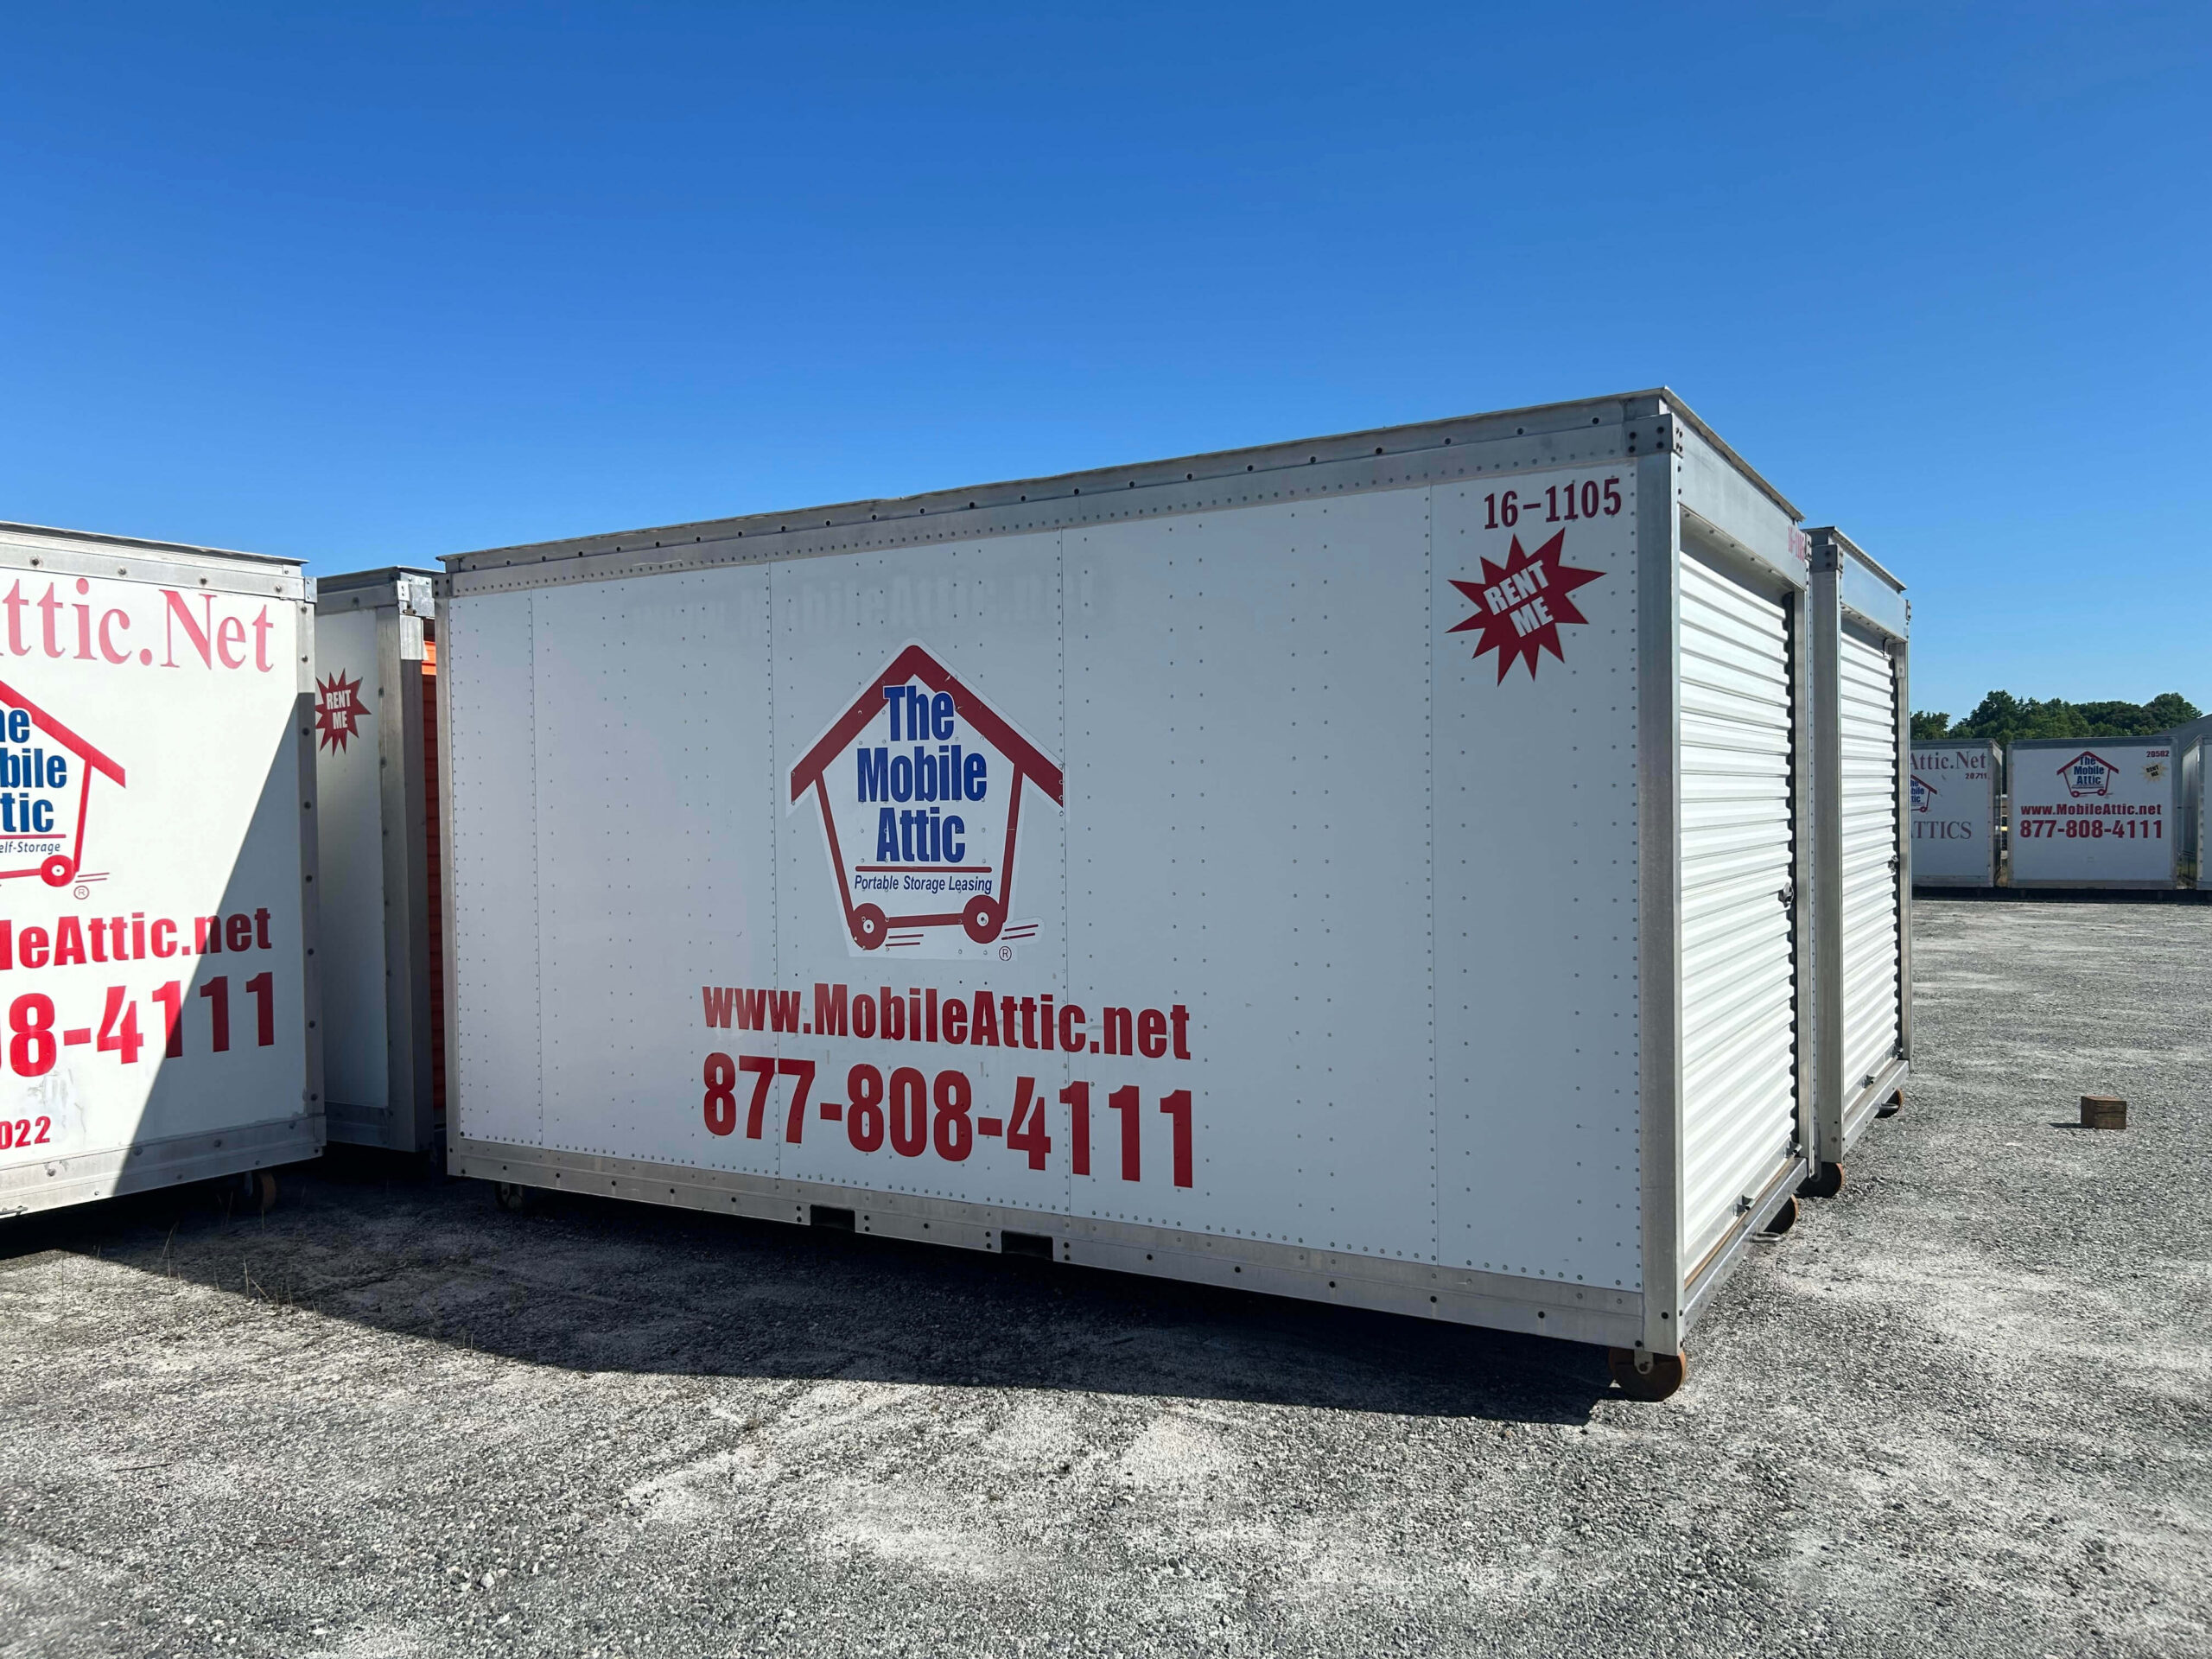 Mobile Attic Spartanburg Lot Container image